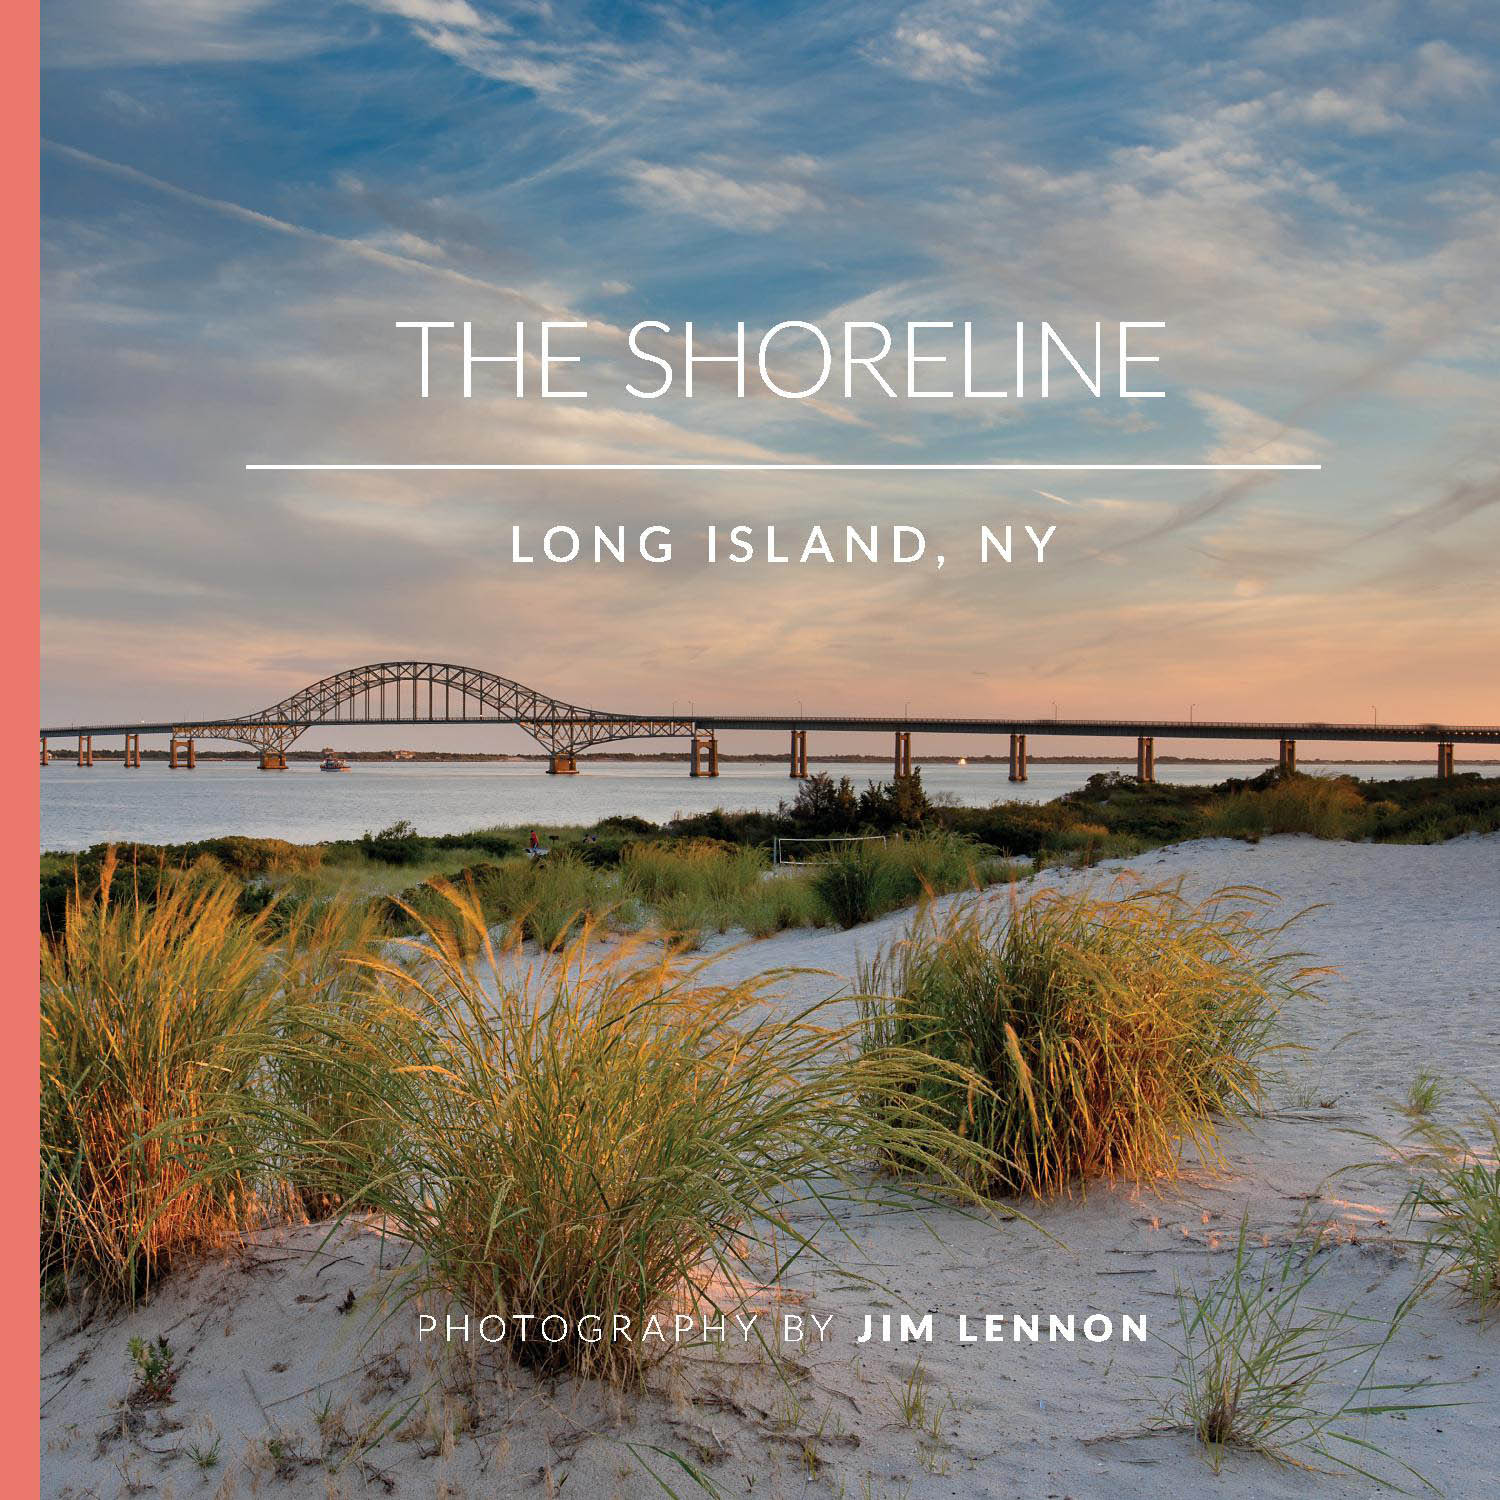 "The Shoreline" by Jim Lennon